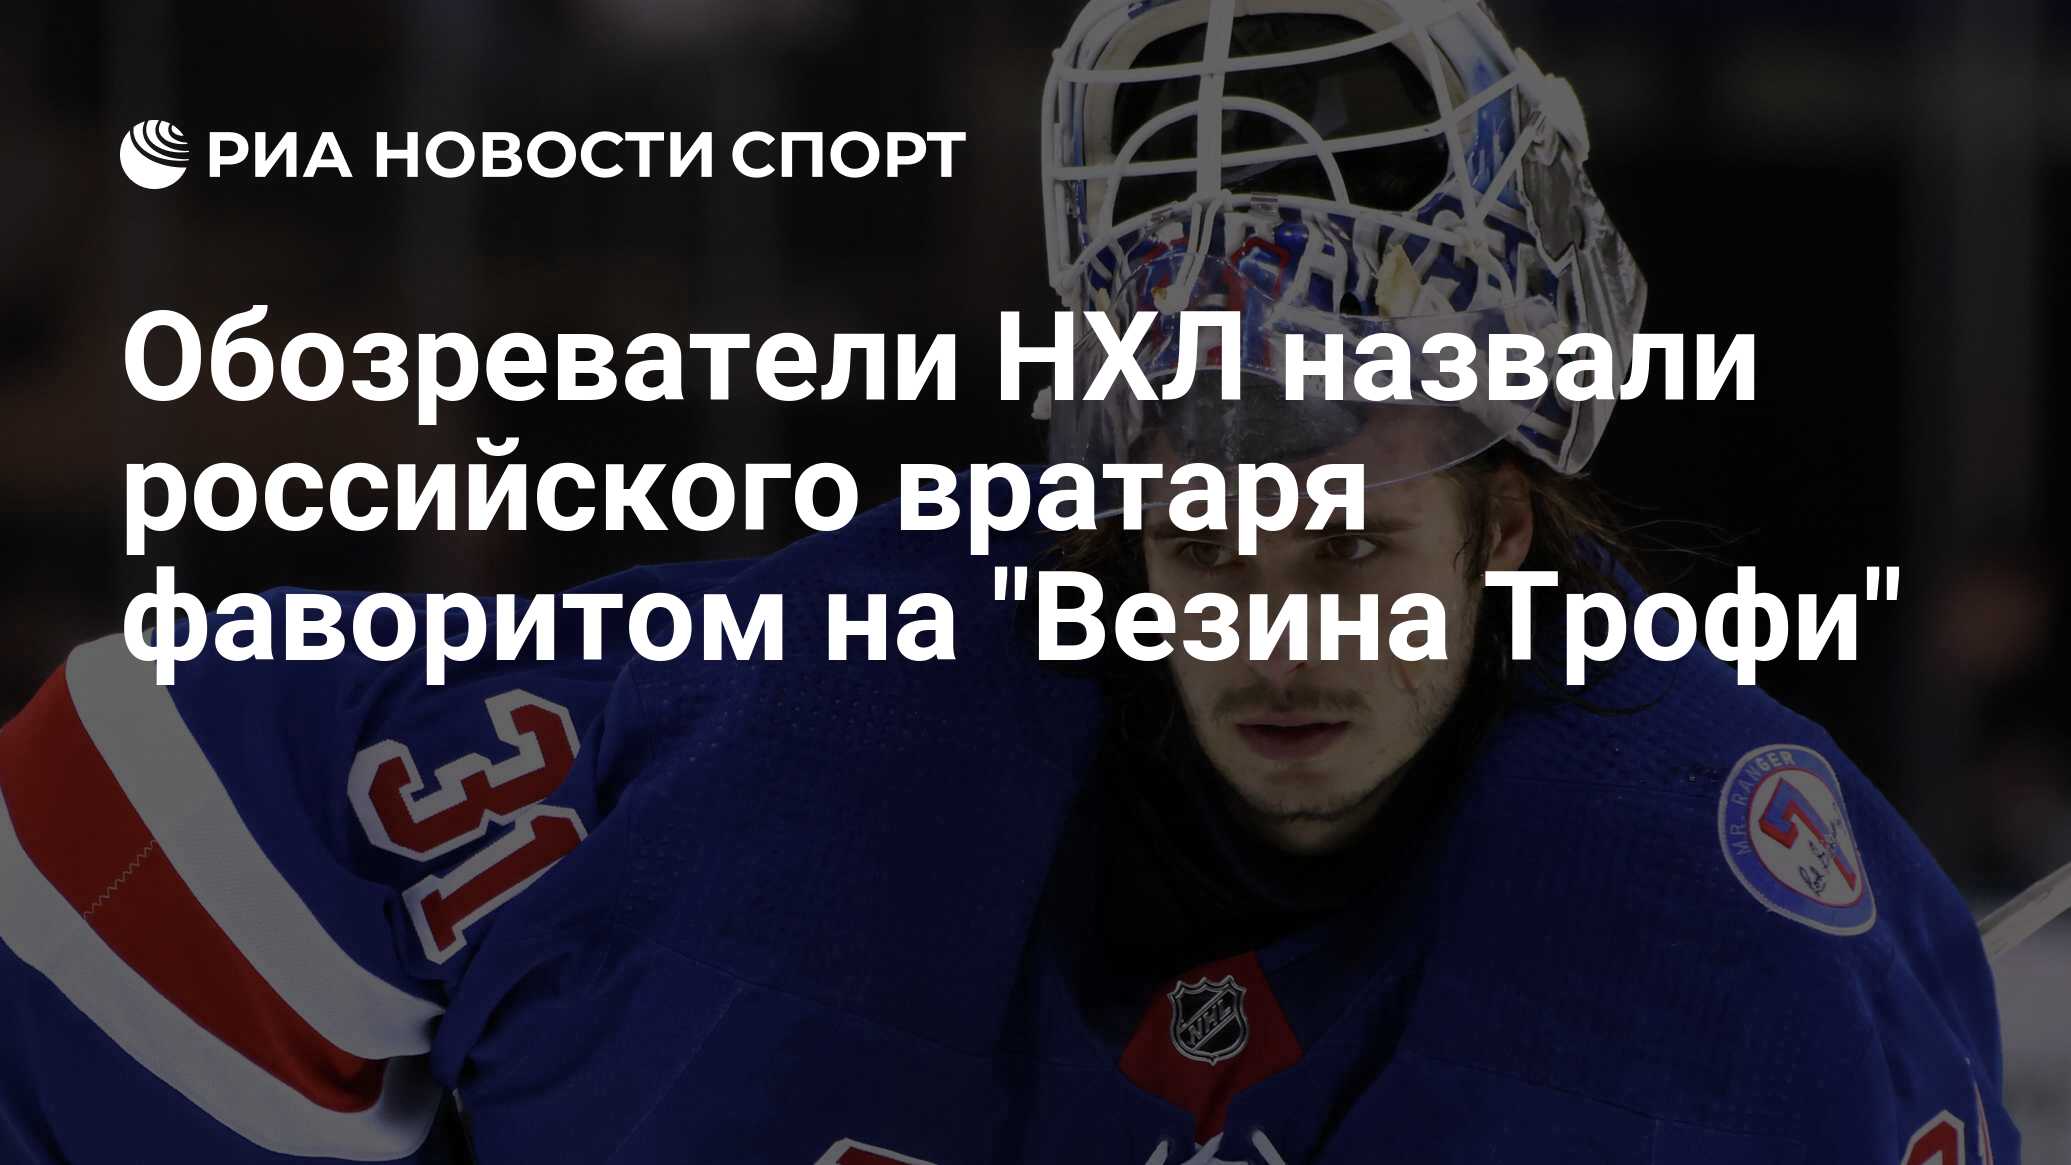 Обозреватели НХЛ назвали российского вратаря фаворитом на "Везина Трофи"